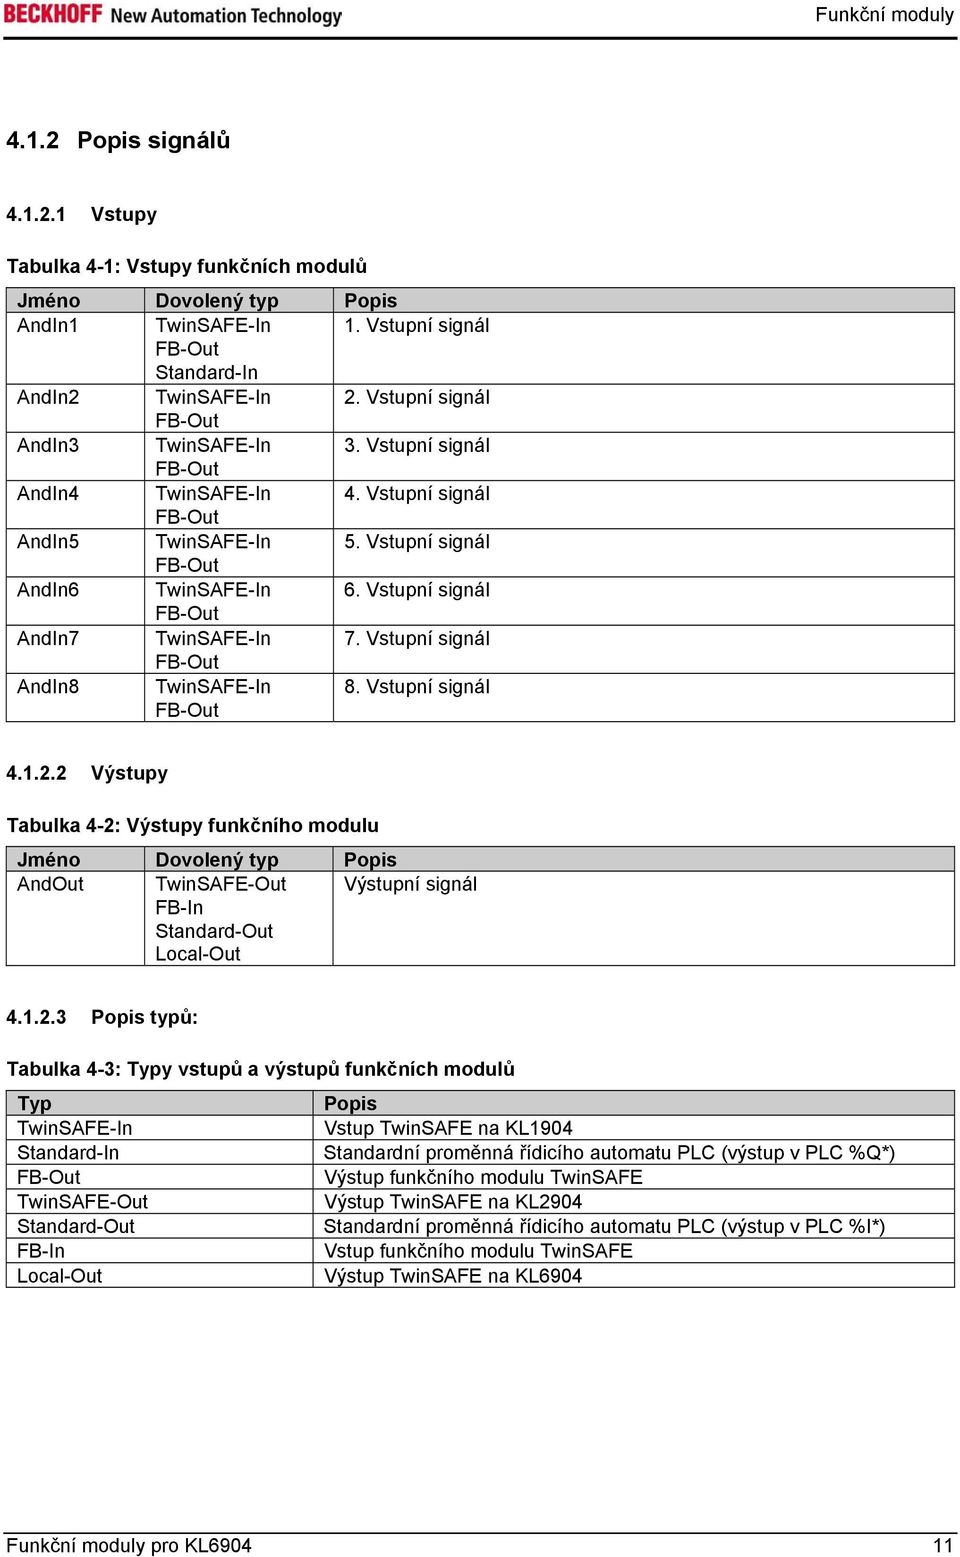 2 Výstupy Tabulka 4-2: Výstupy funkčního modulu Jméno Dovolený typ Popis AndOut TwinSAFE-Out Výstupní signál 4.1.2.3 Popis typů: Tabulka 4-3: Typy vstupů a výstupů funkčních modulů Typ Popis Vstup